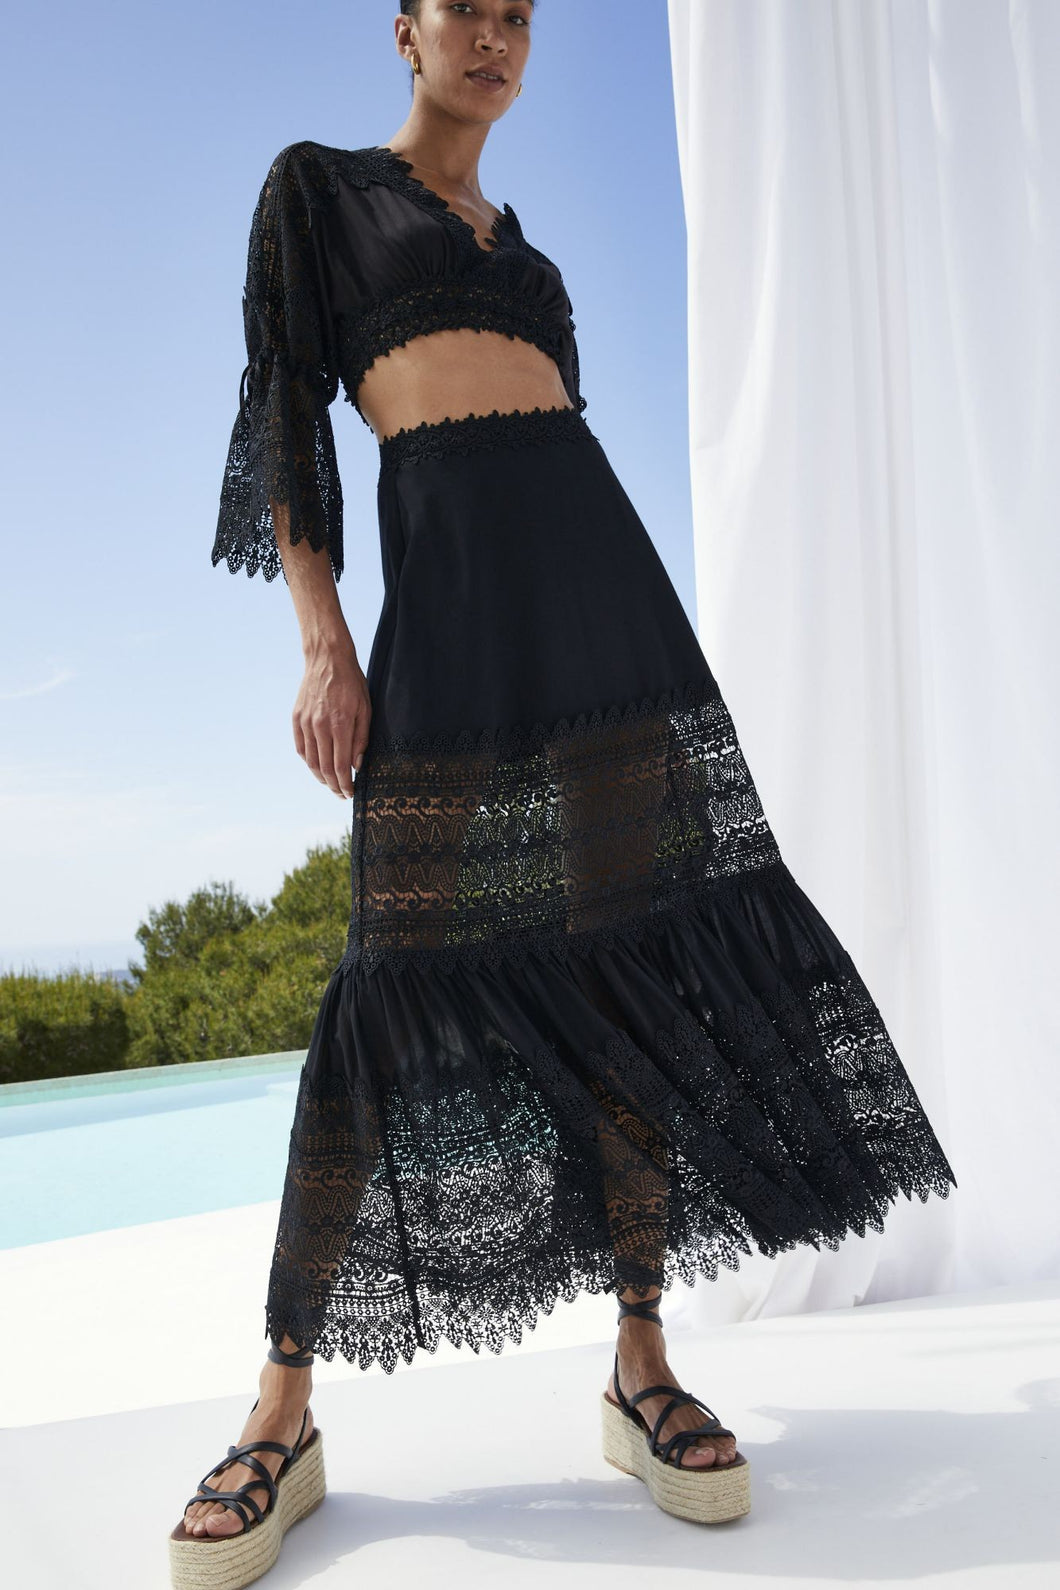 Charo Ruiz Viola Skirt - Black